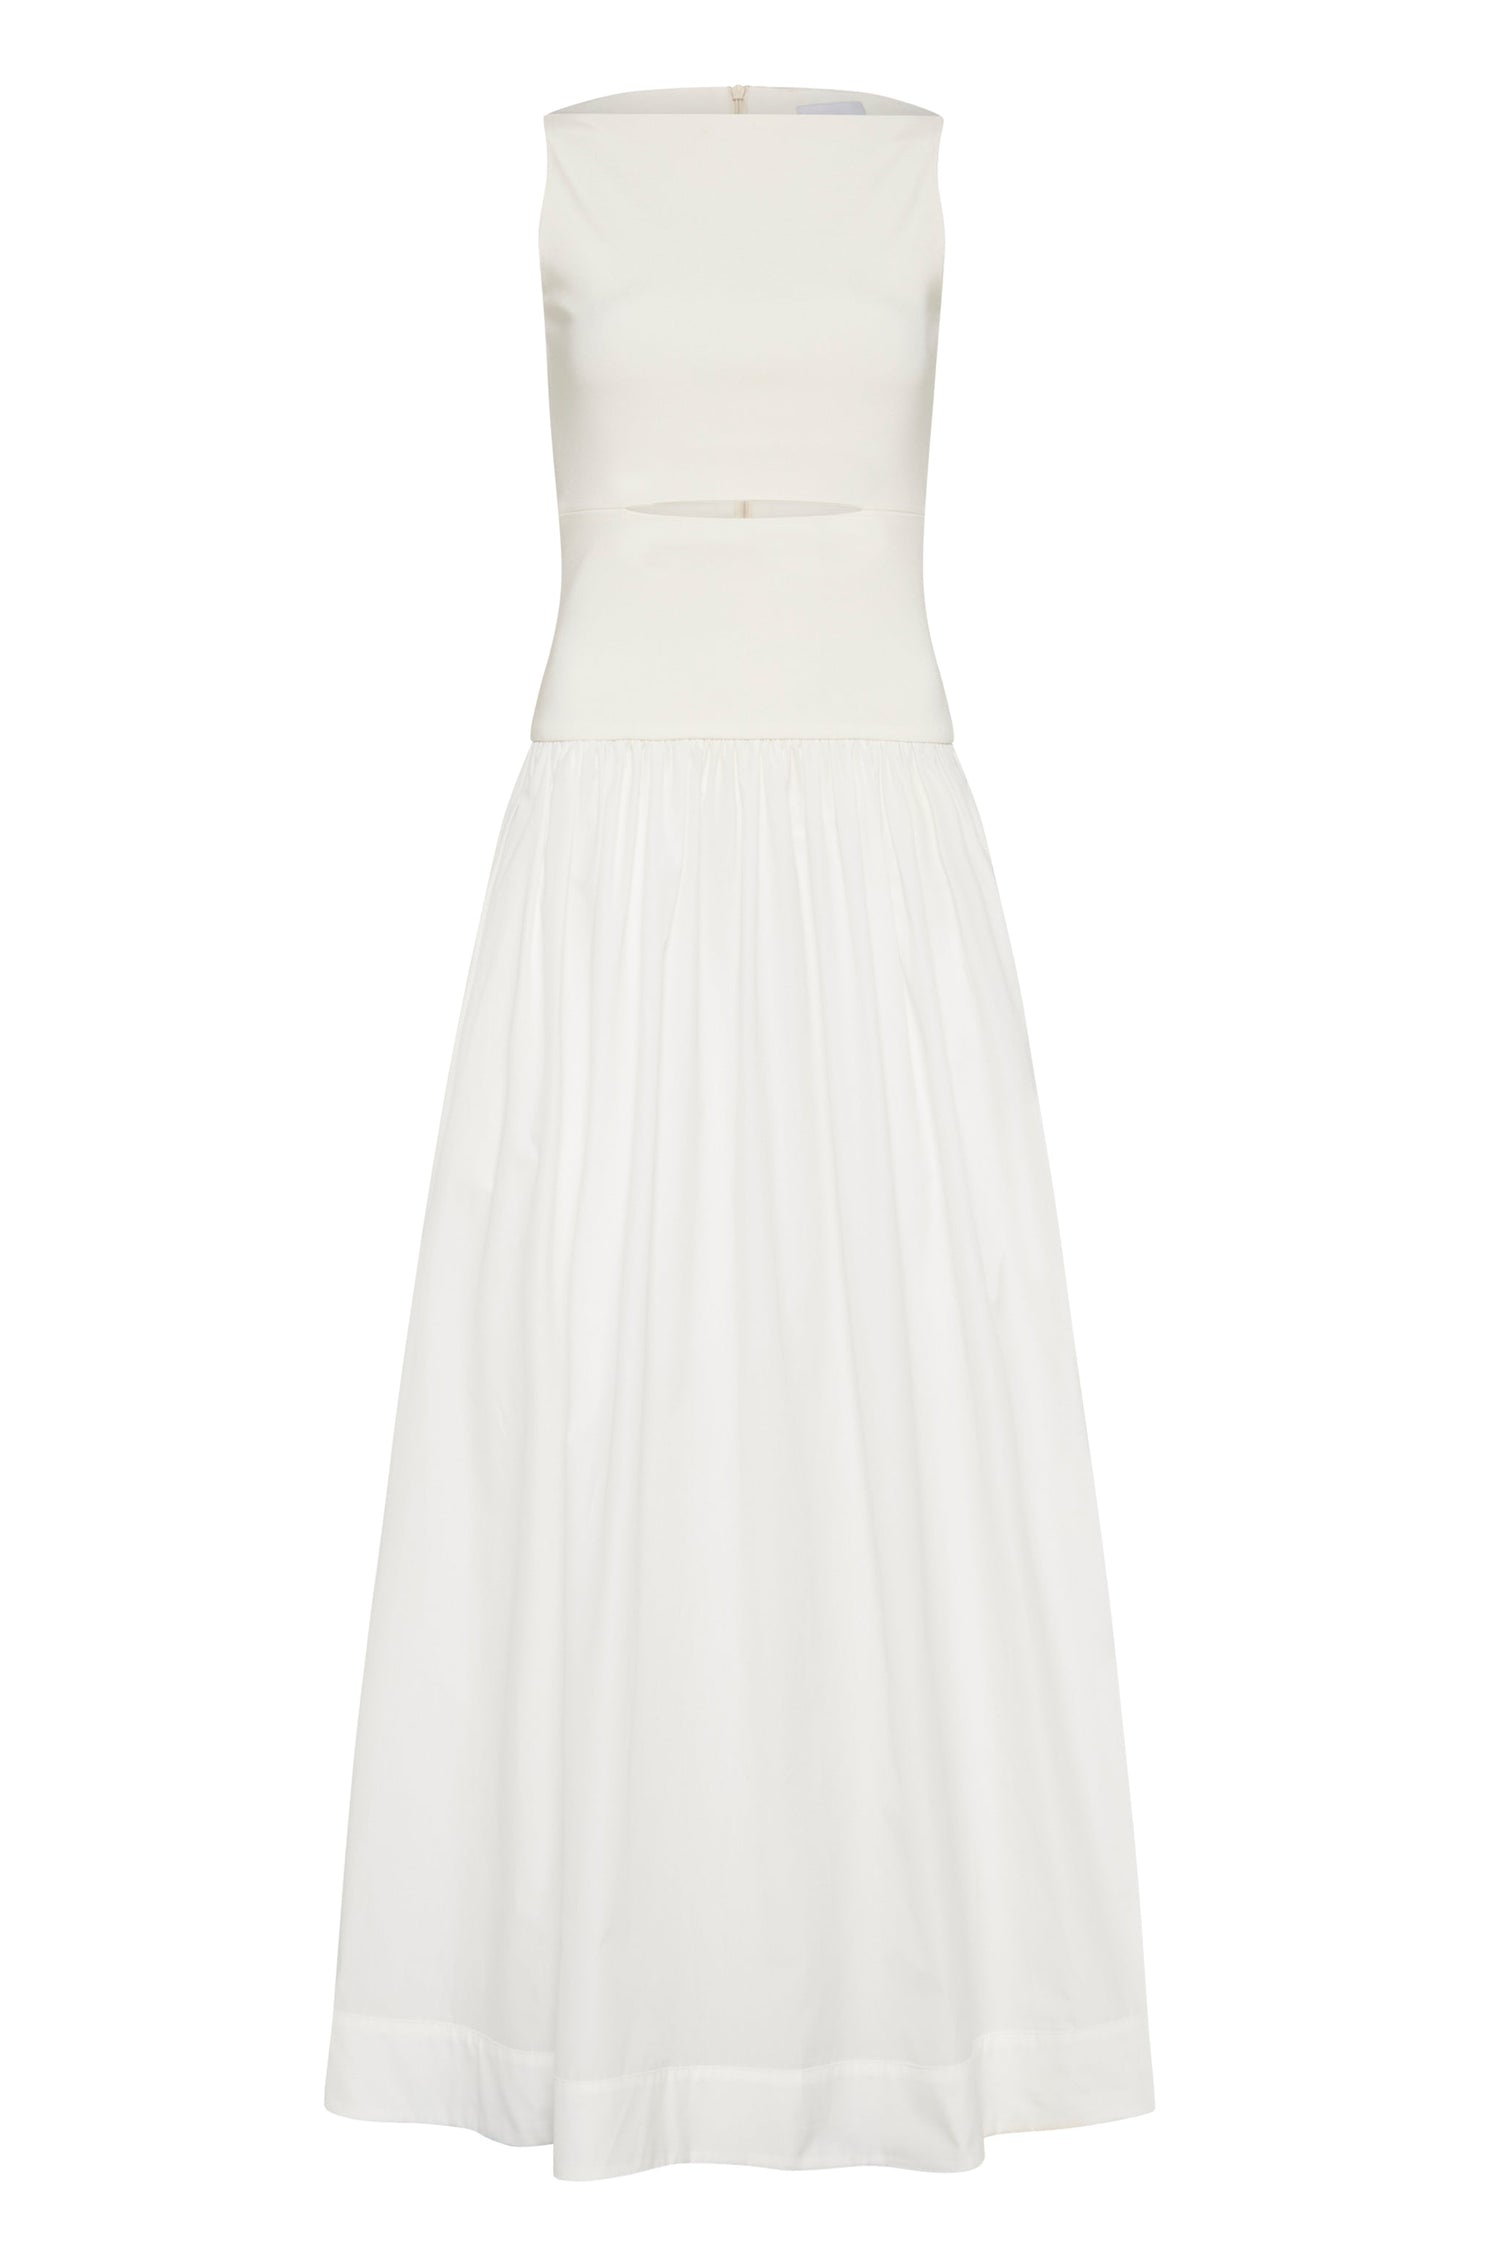 ESSE - SLEEVELESS SPLIT MAXI DRESS - WHITE Full length product shot